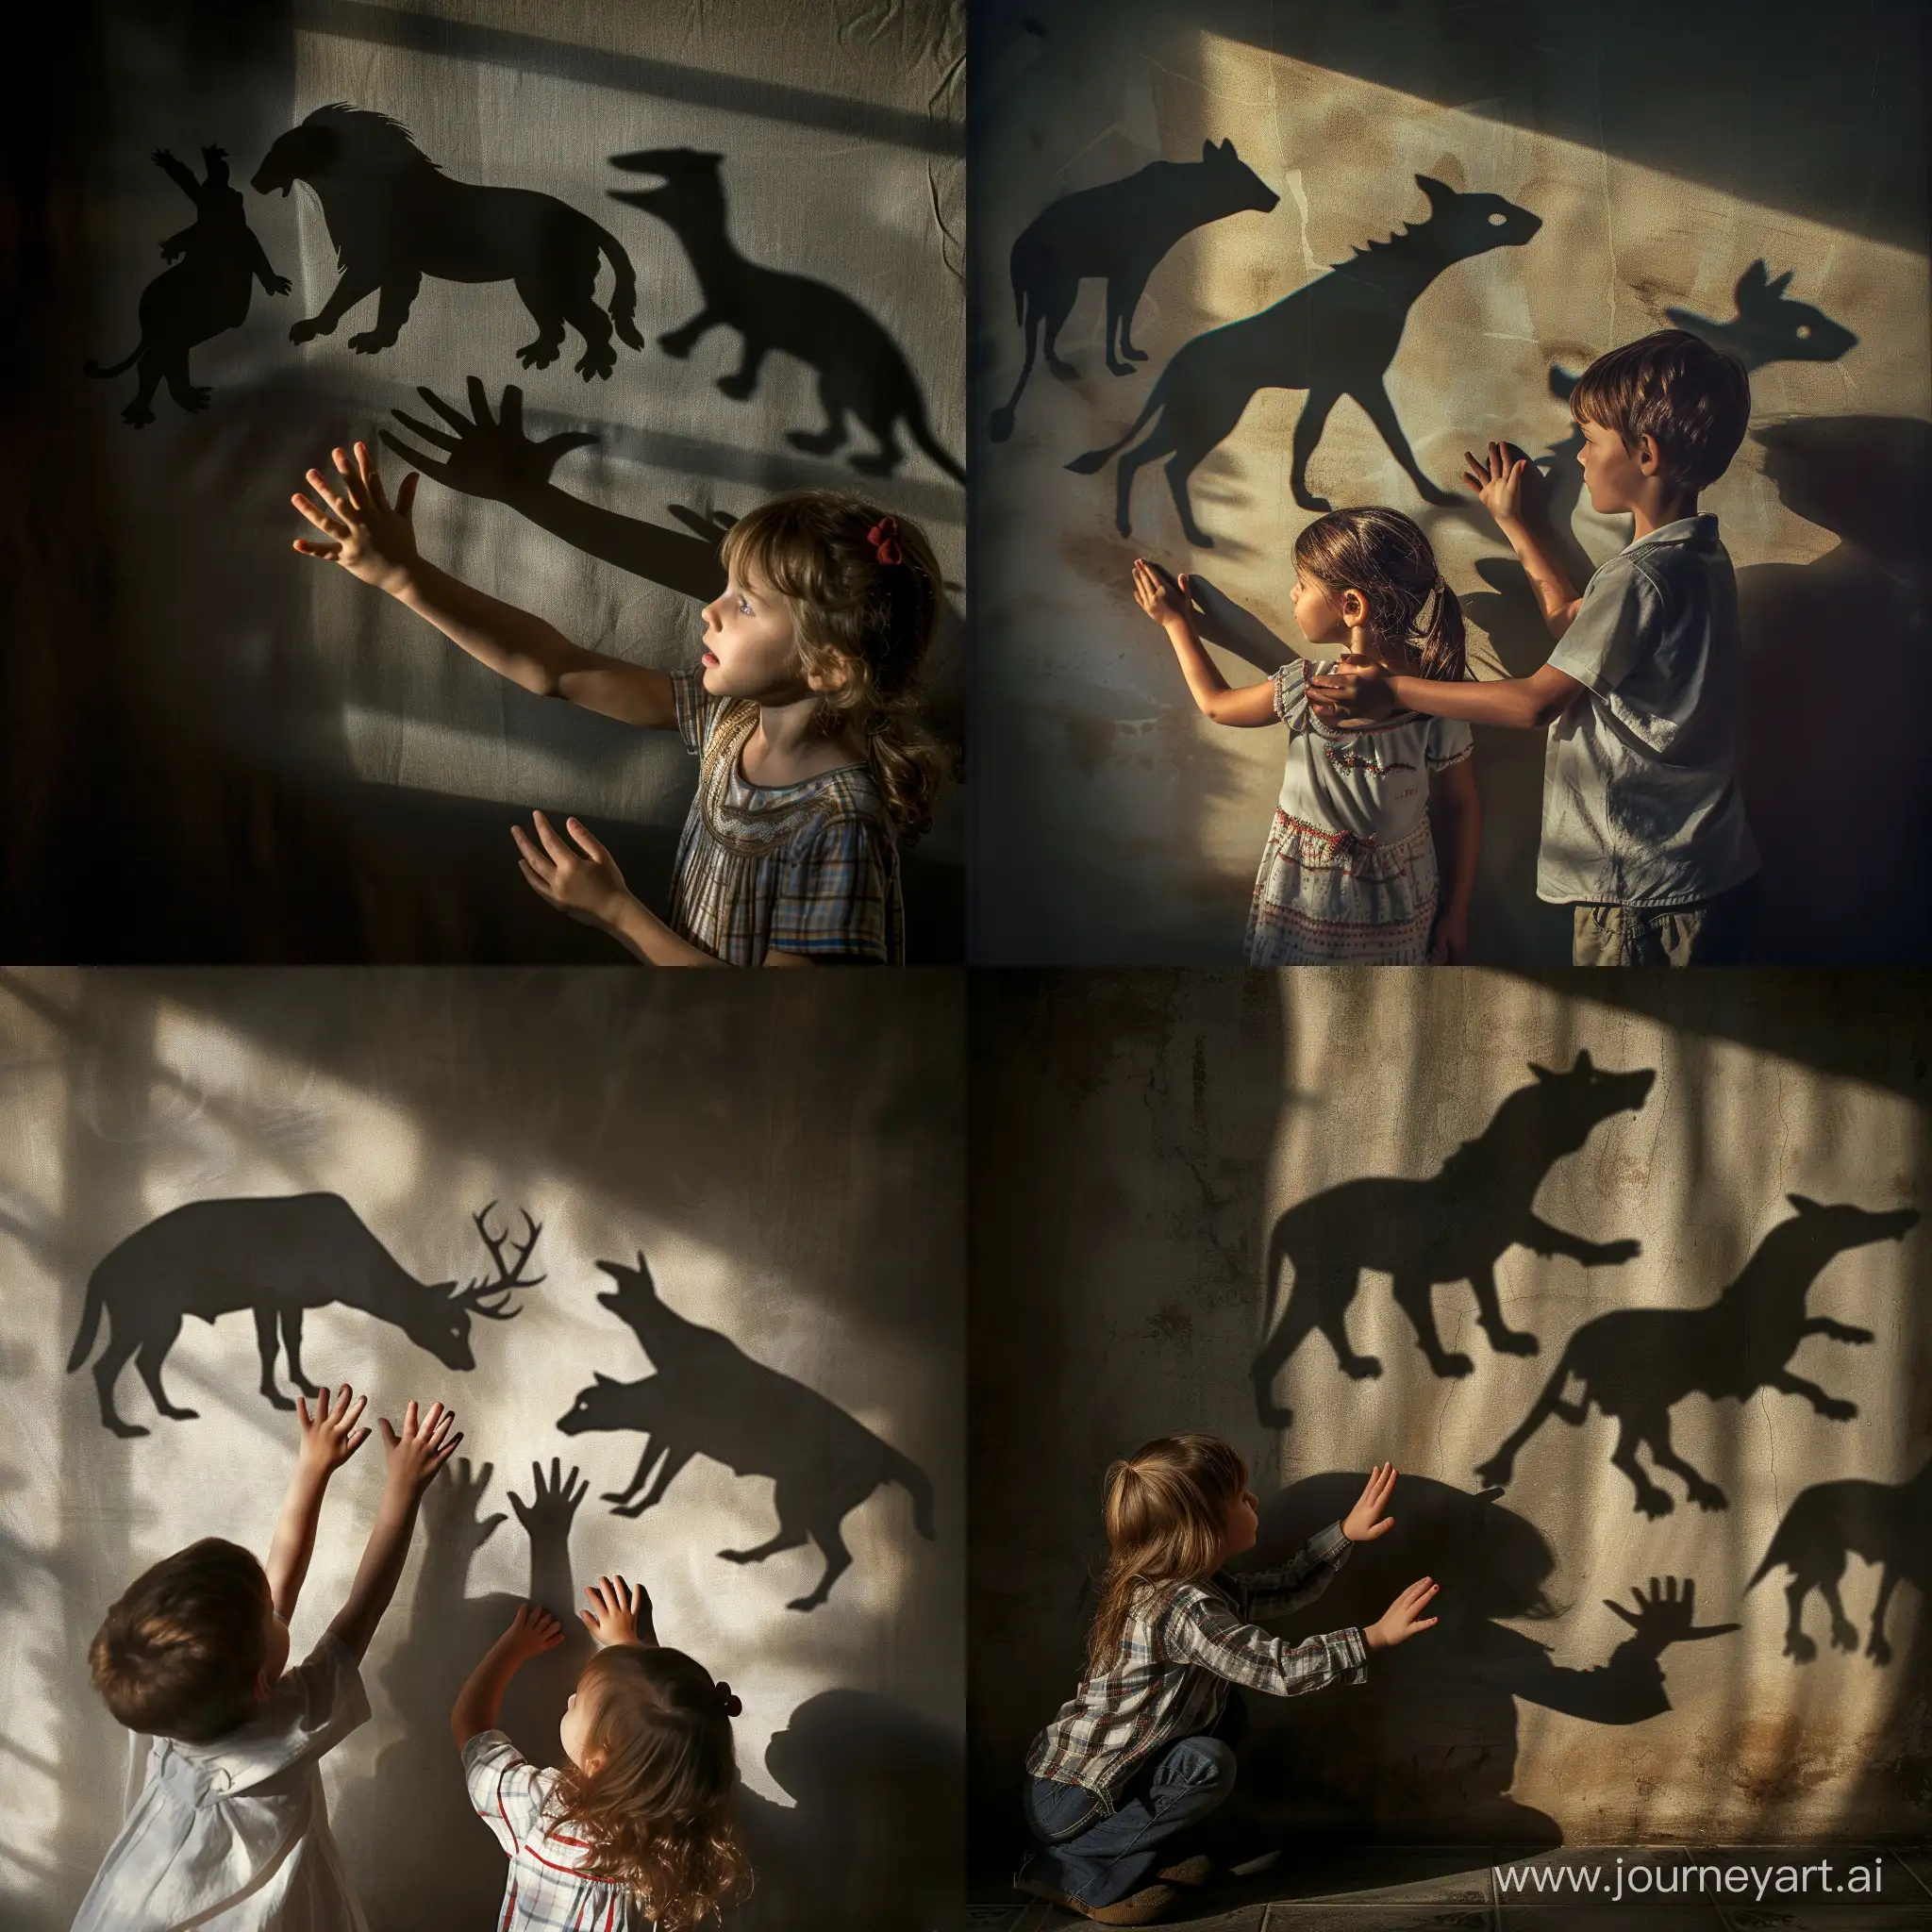 Мальчик и девочка играют в комнате в театр теней и своими руками и пальцами создают тени животных на стене, фотография, гиперреализм, высокое разрешение